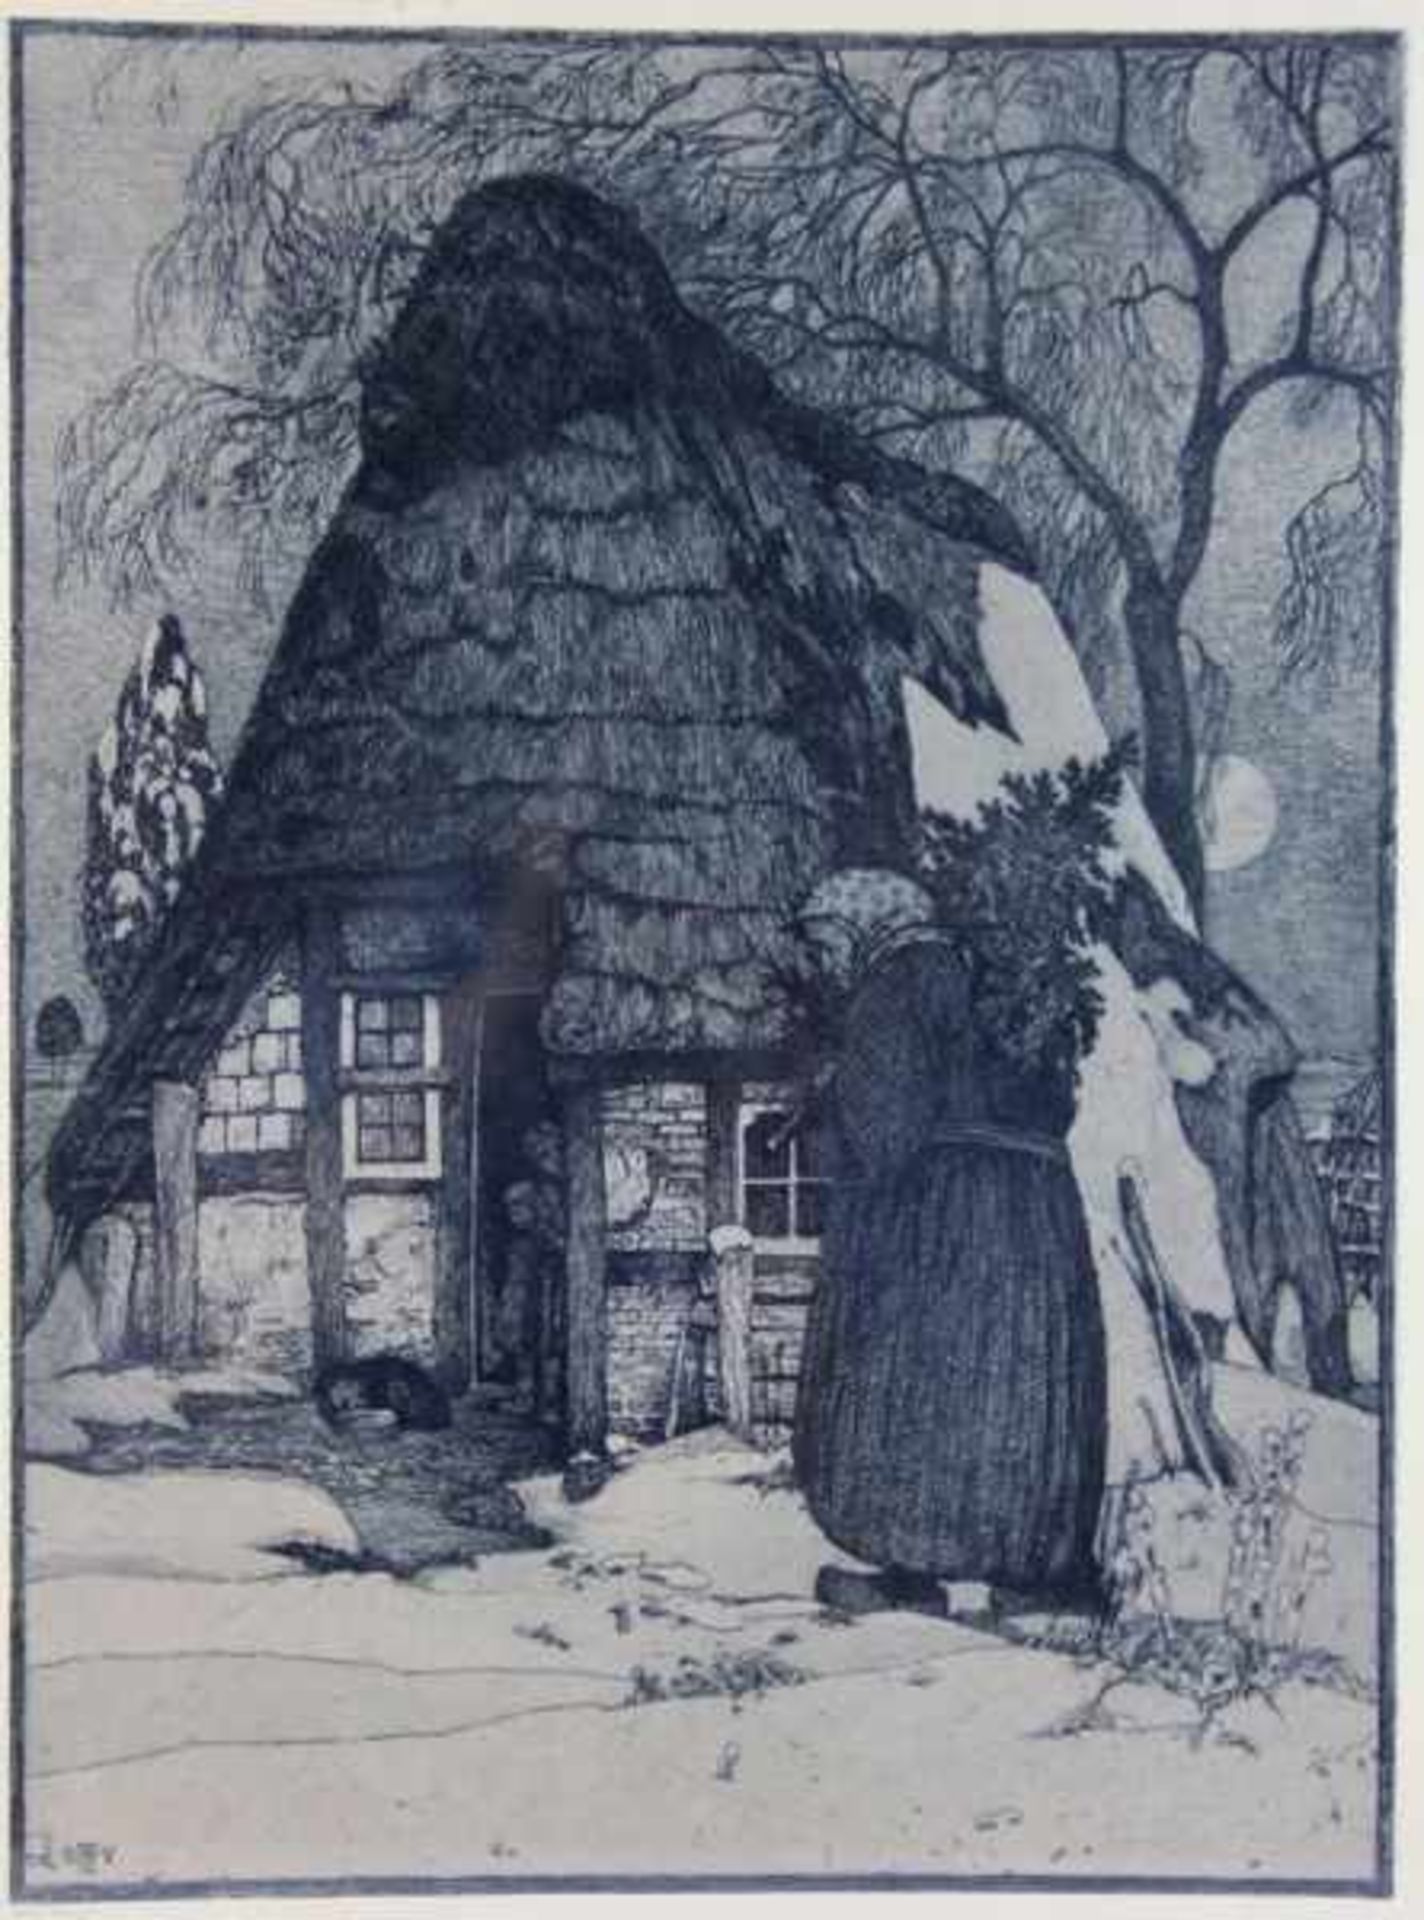 Vogeler, Heinrich1872-1942, Aquatintaradierung, Weihnachten, alte Frau mit einem Christbaum vor